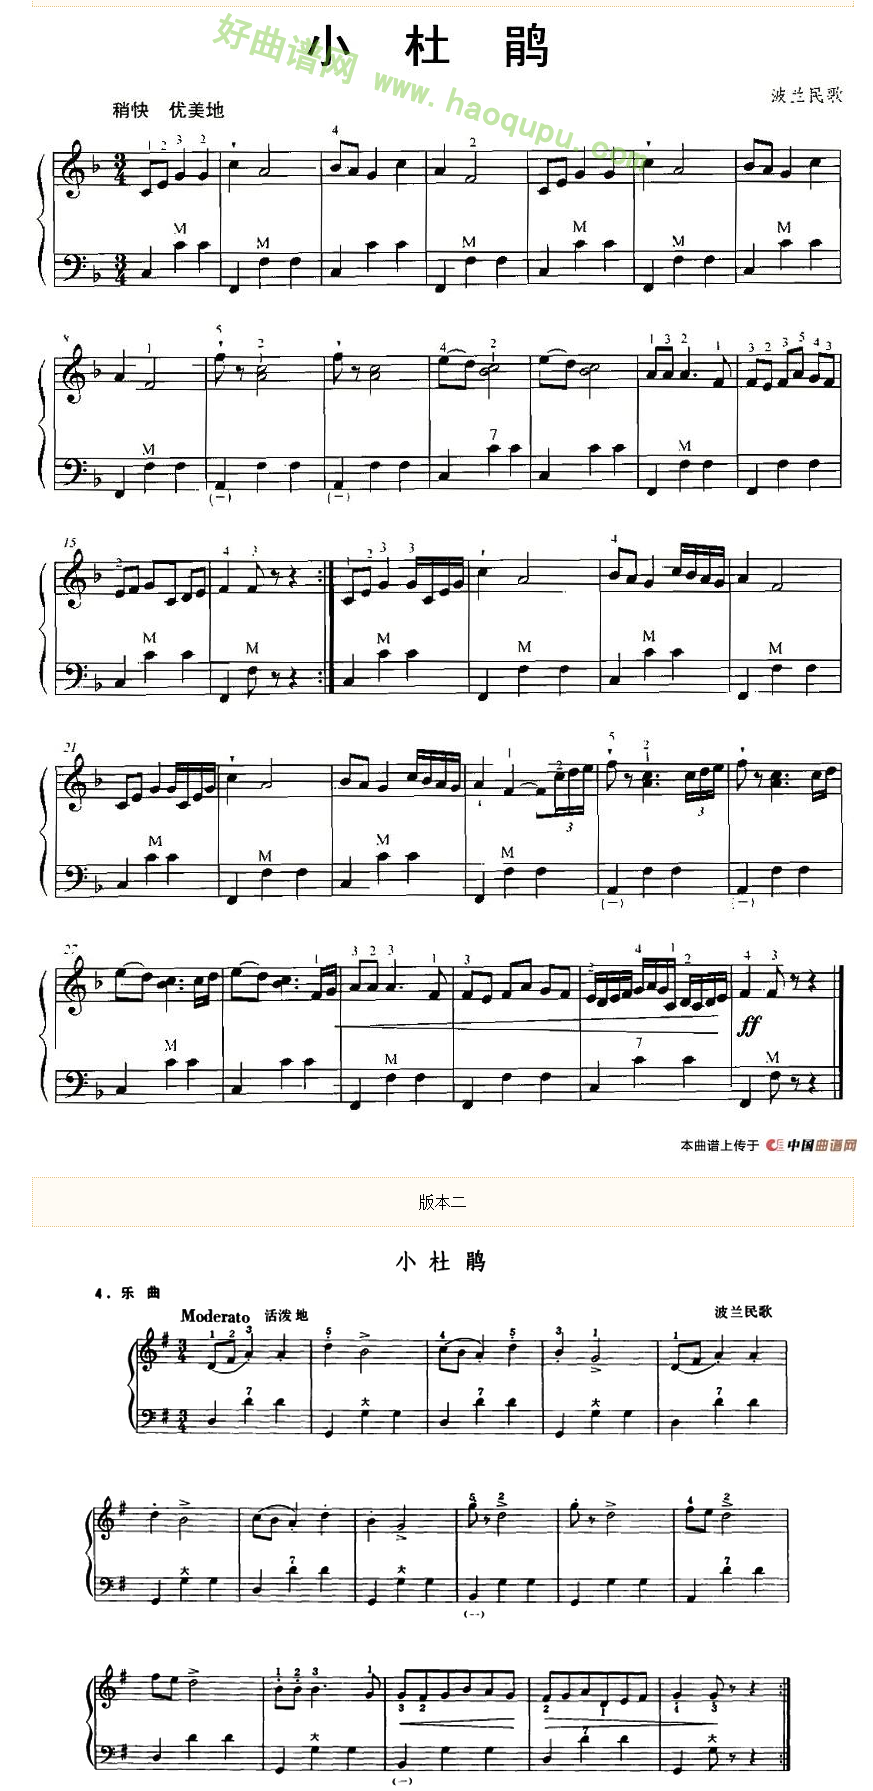 《小杜鹃》 手风琴曲谱